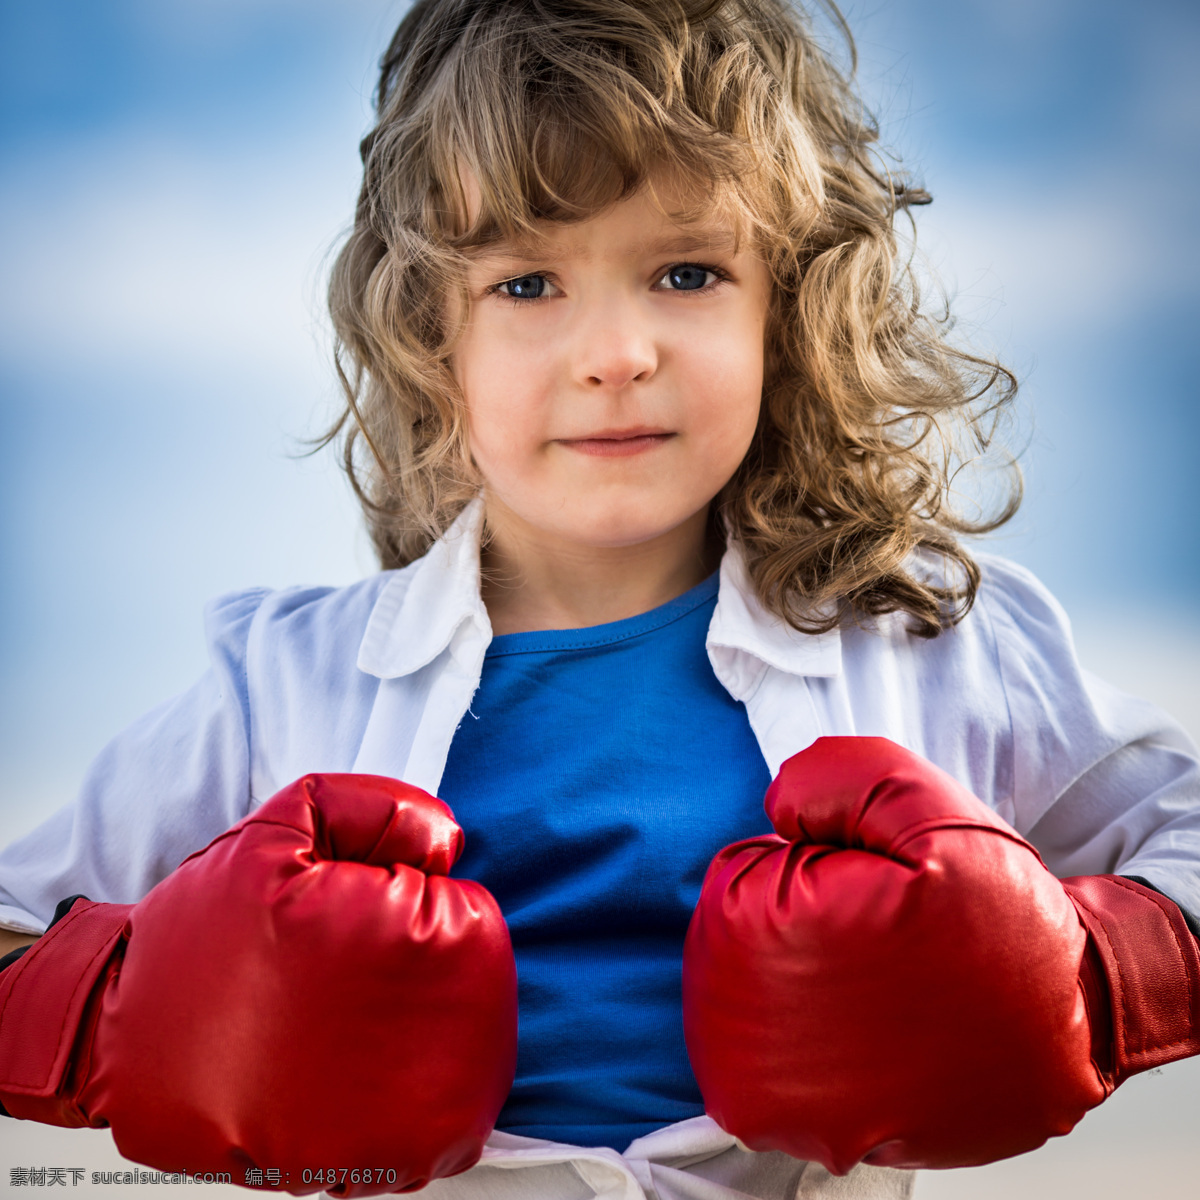 打拳 击 孩子 拳击 手套 儿童 儿童图片 人物图片